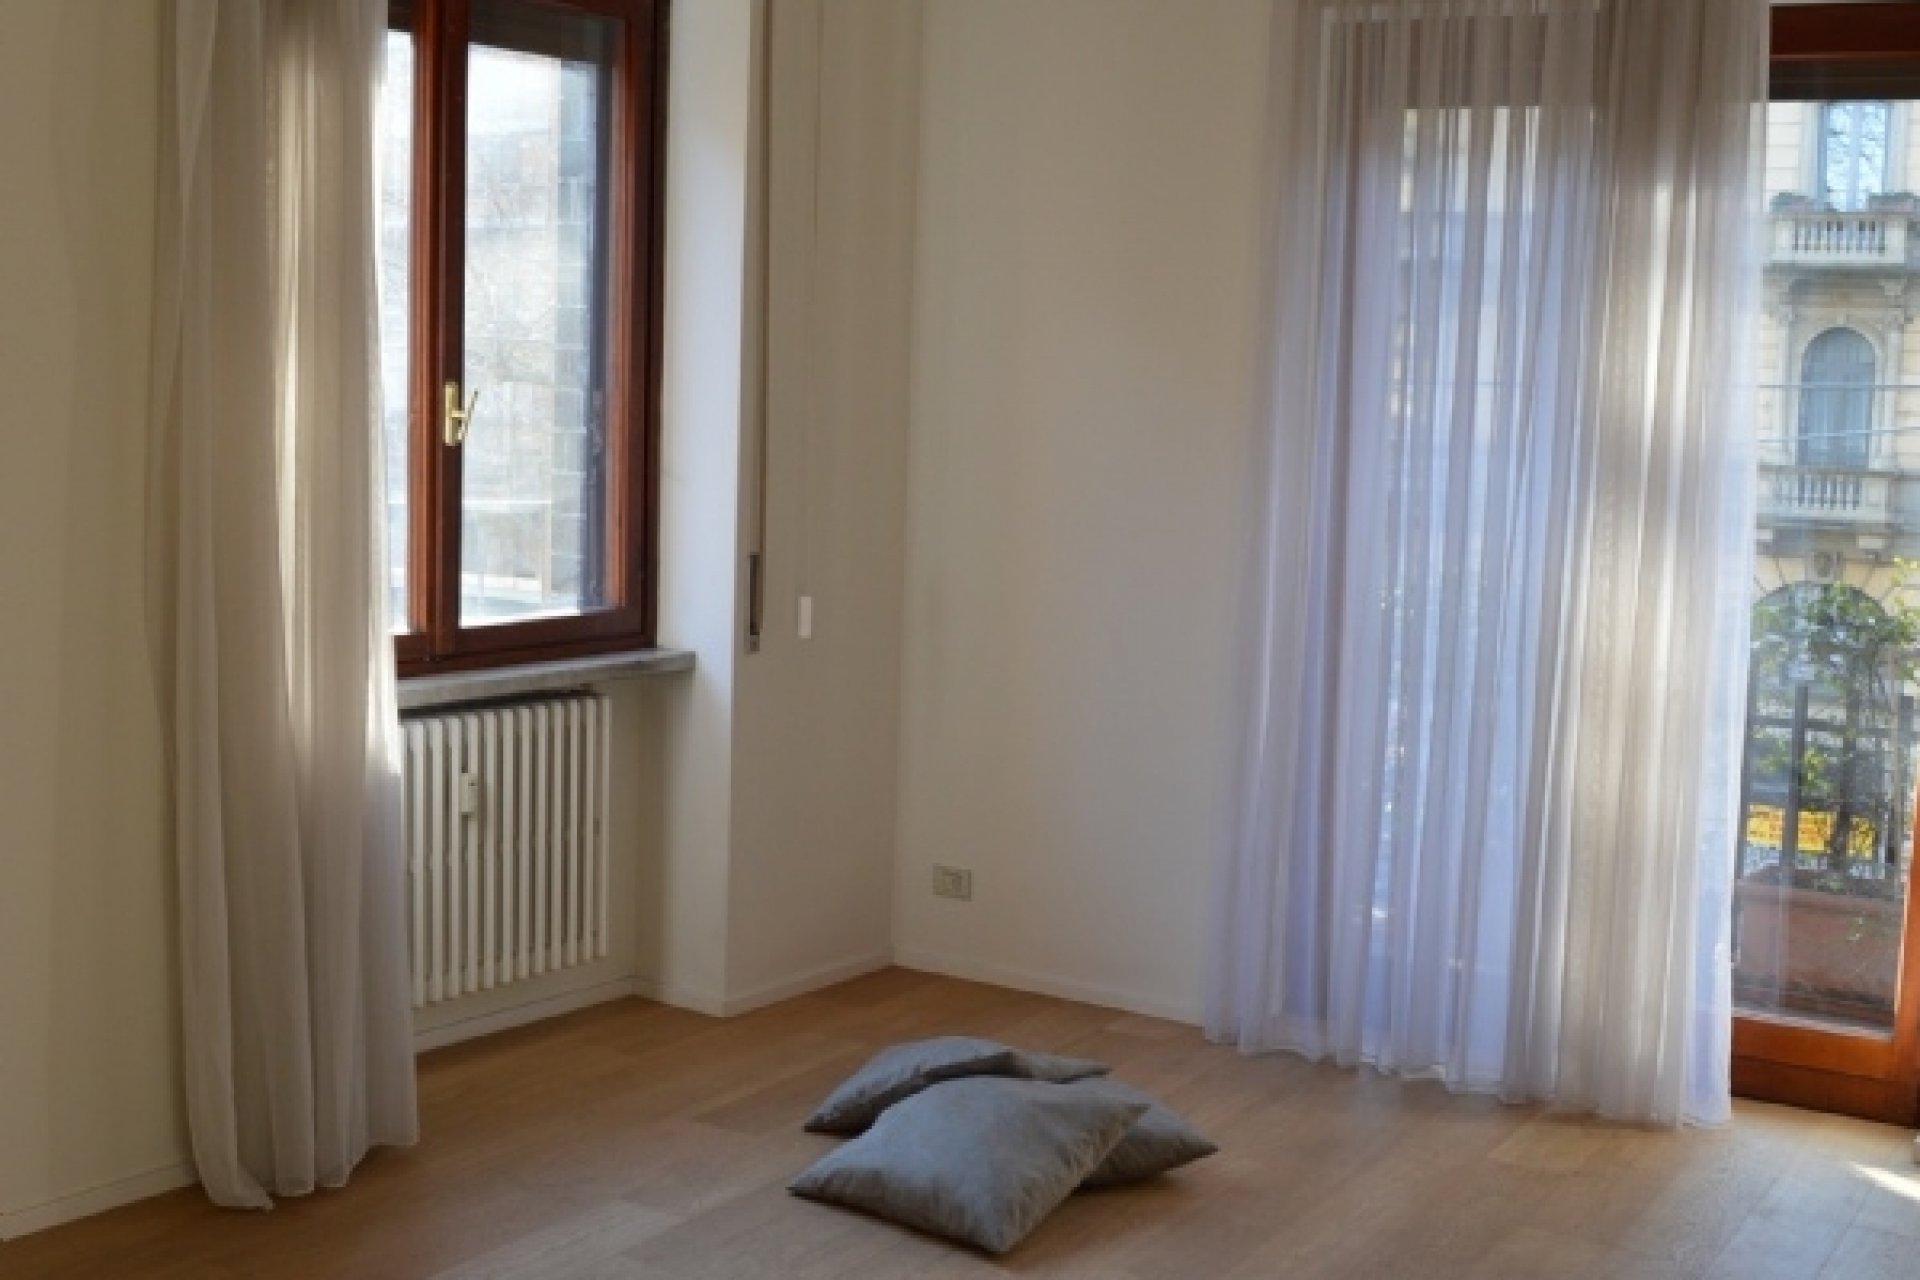 Vendita Apartment Milano - BEAUTIFULFLAT CLOSE TO TRICOLORE SQUARE Locality Porta Venezia - Piave - Cinque Giornate